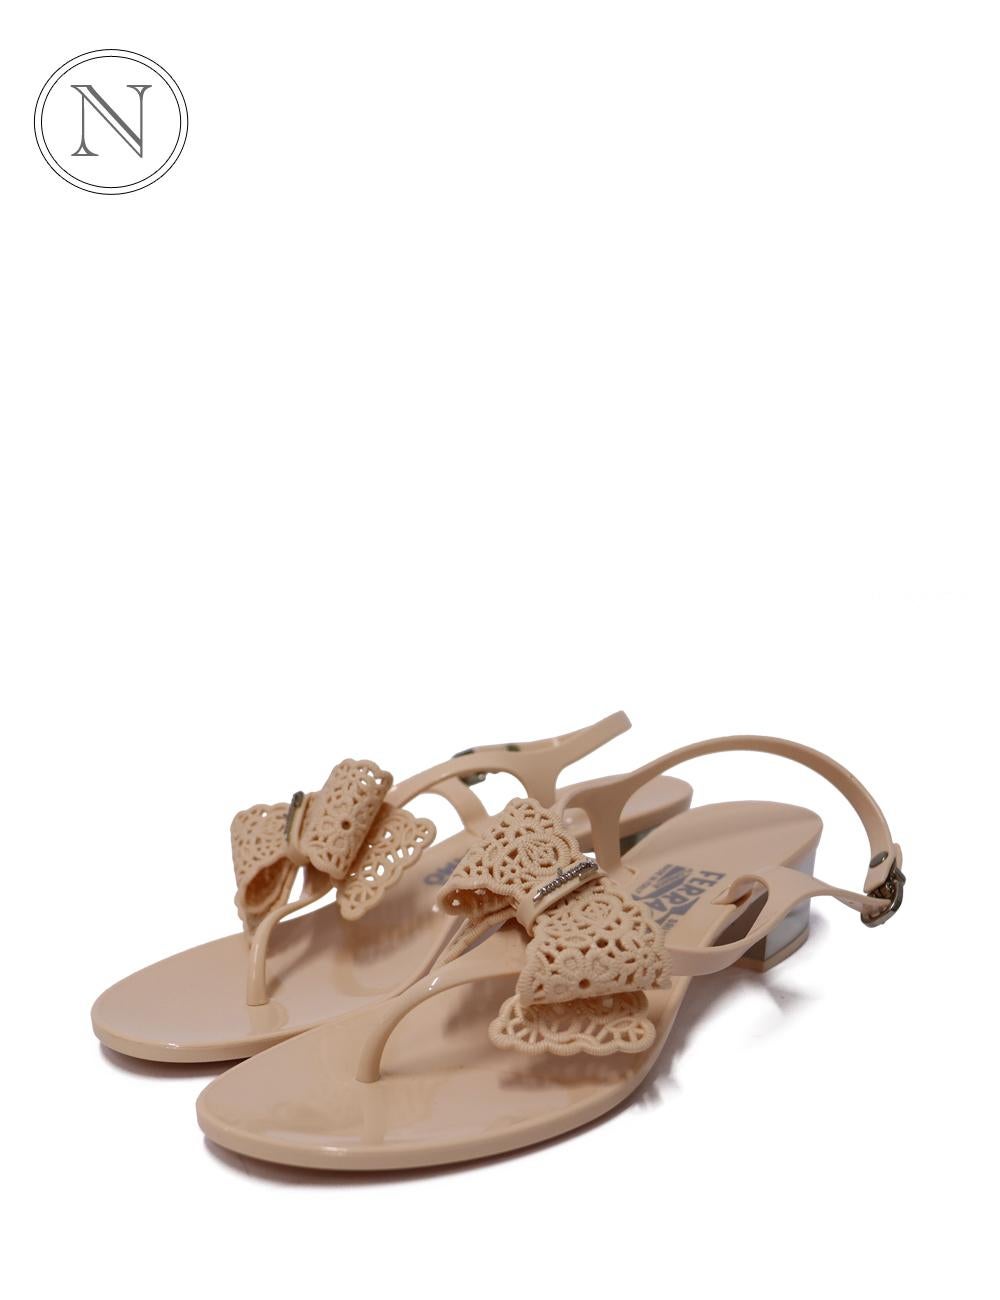 Salvatore Ferragamo cream pink bow sandals size EU 38.5 In New Condition For Sale In Amman, JO